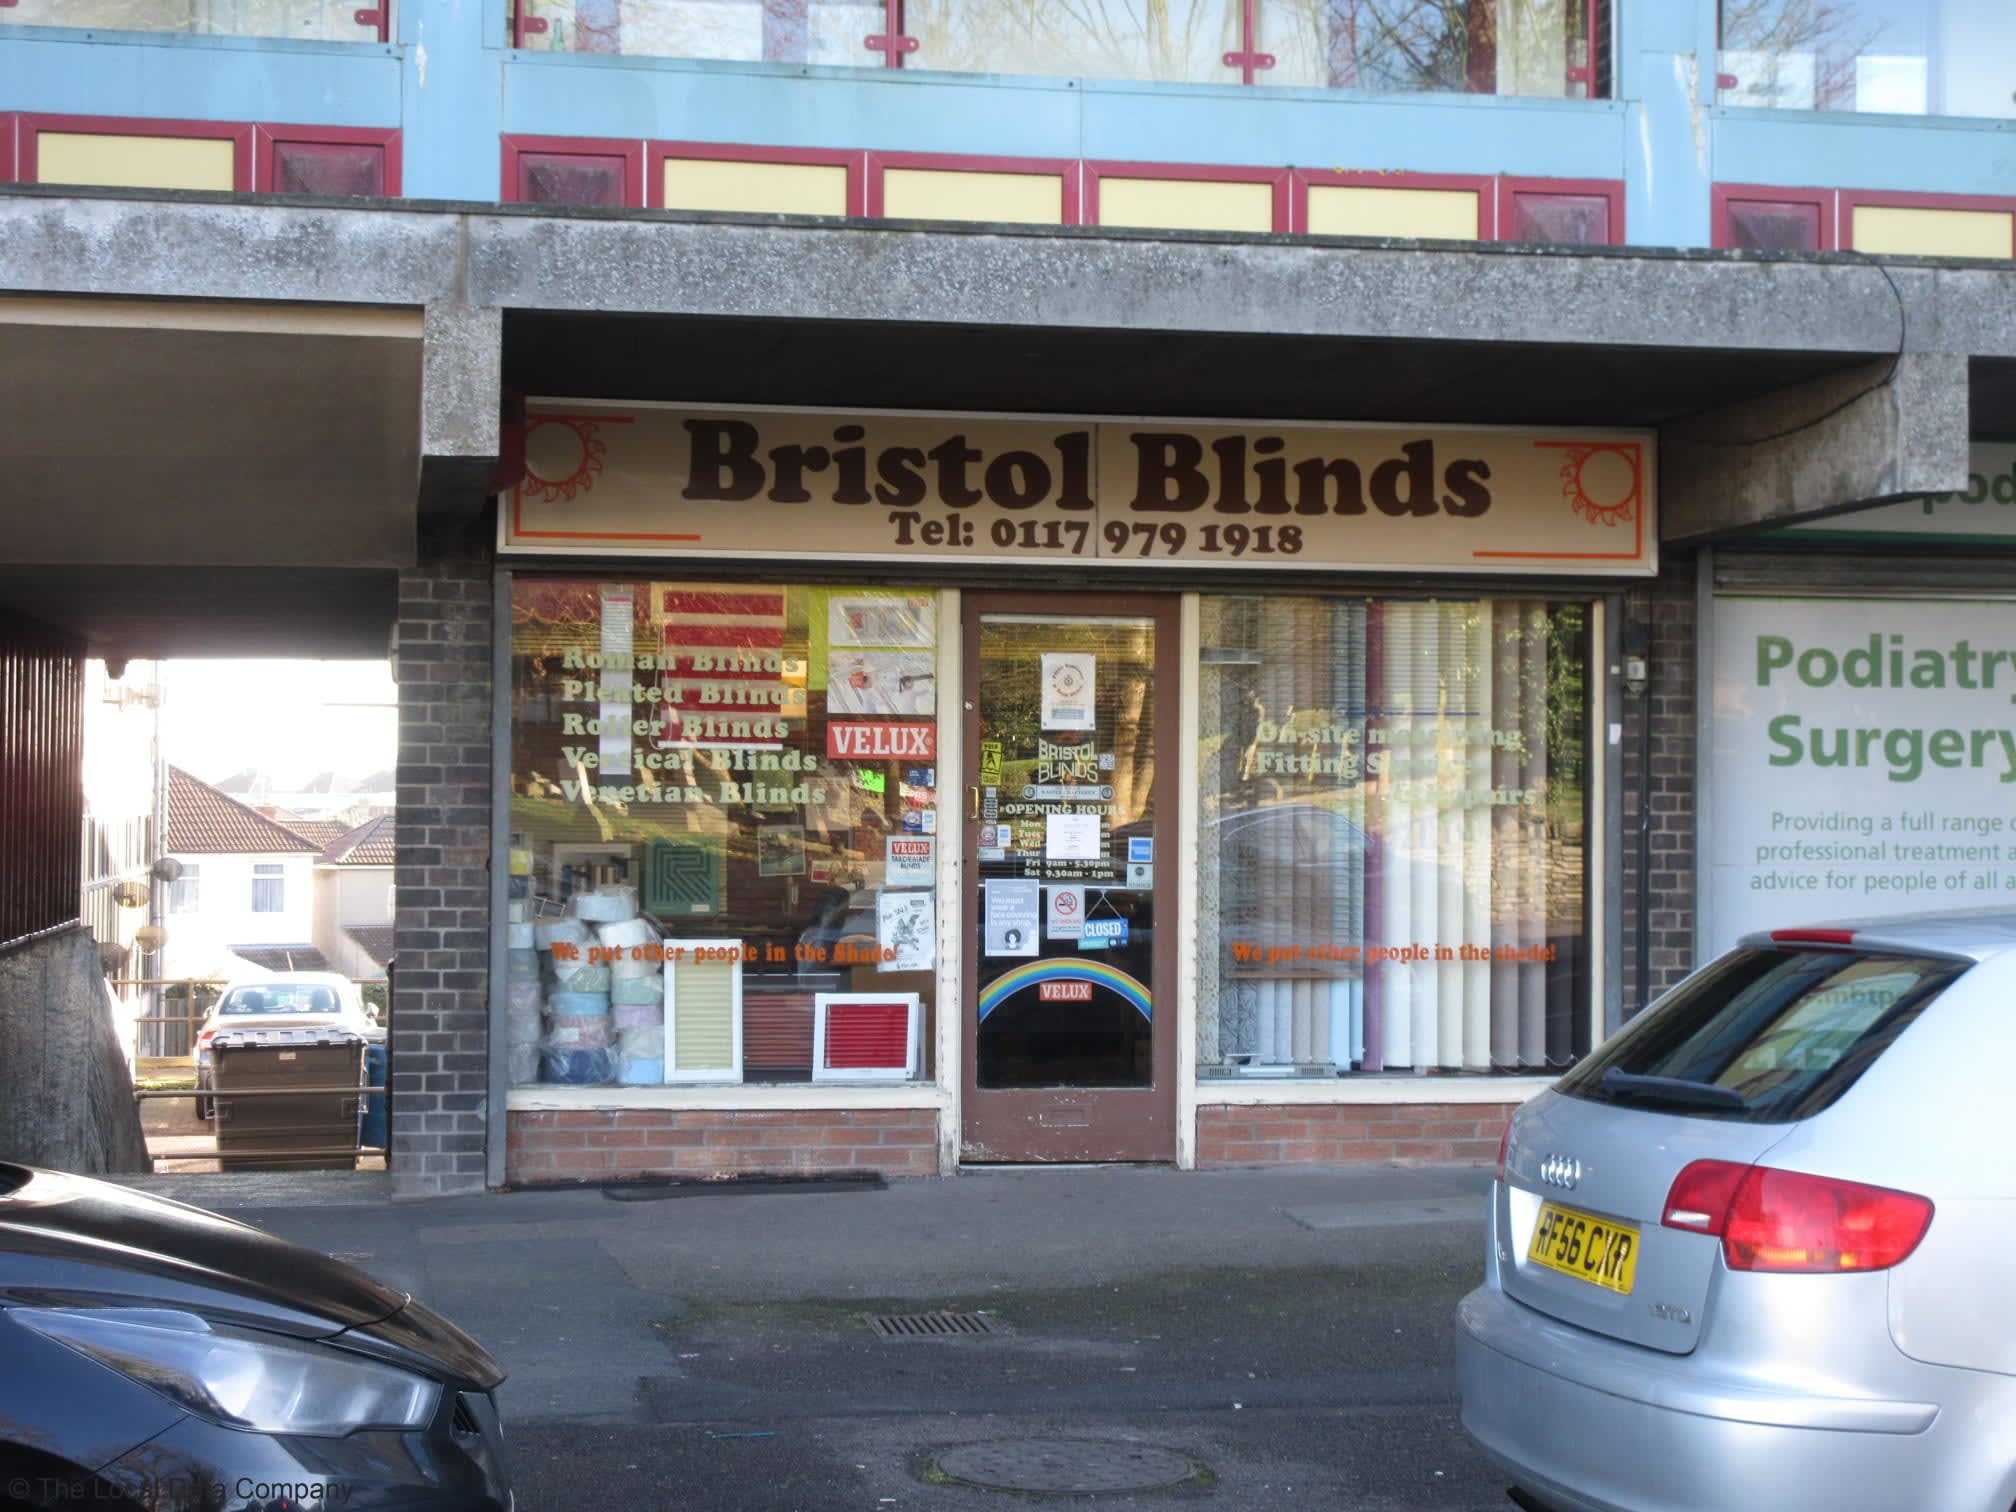 Images Bristol Blinds